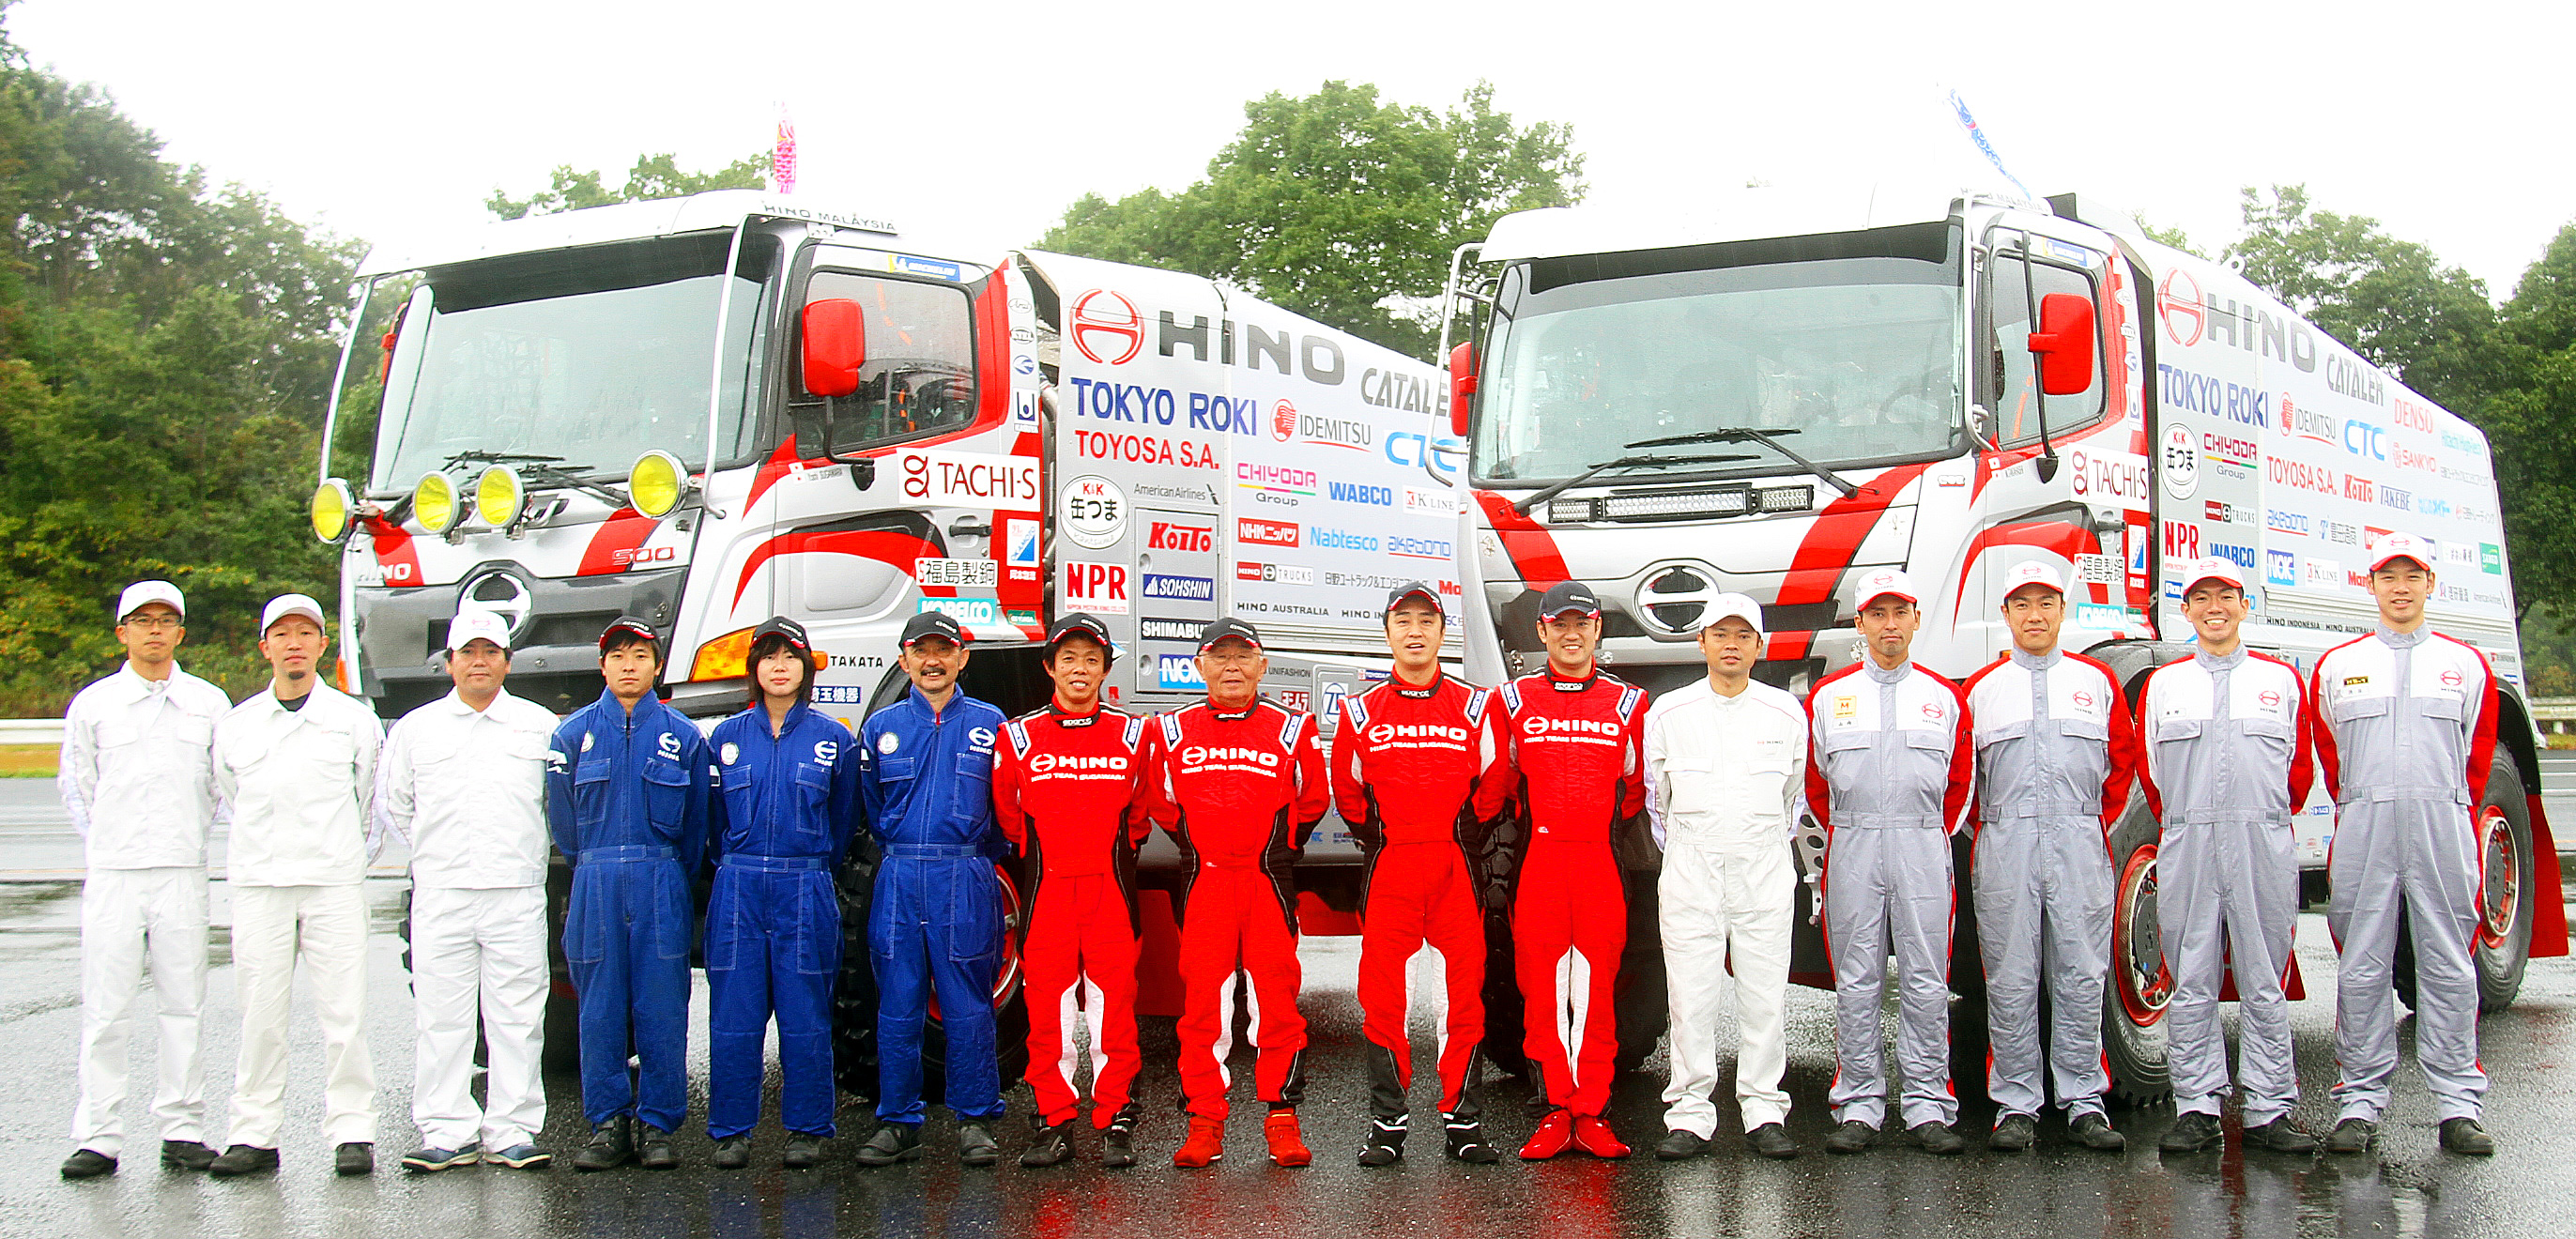  Members of the Hino Team Sugawara members who took on the 2018 Dakar Rally